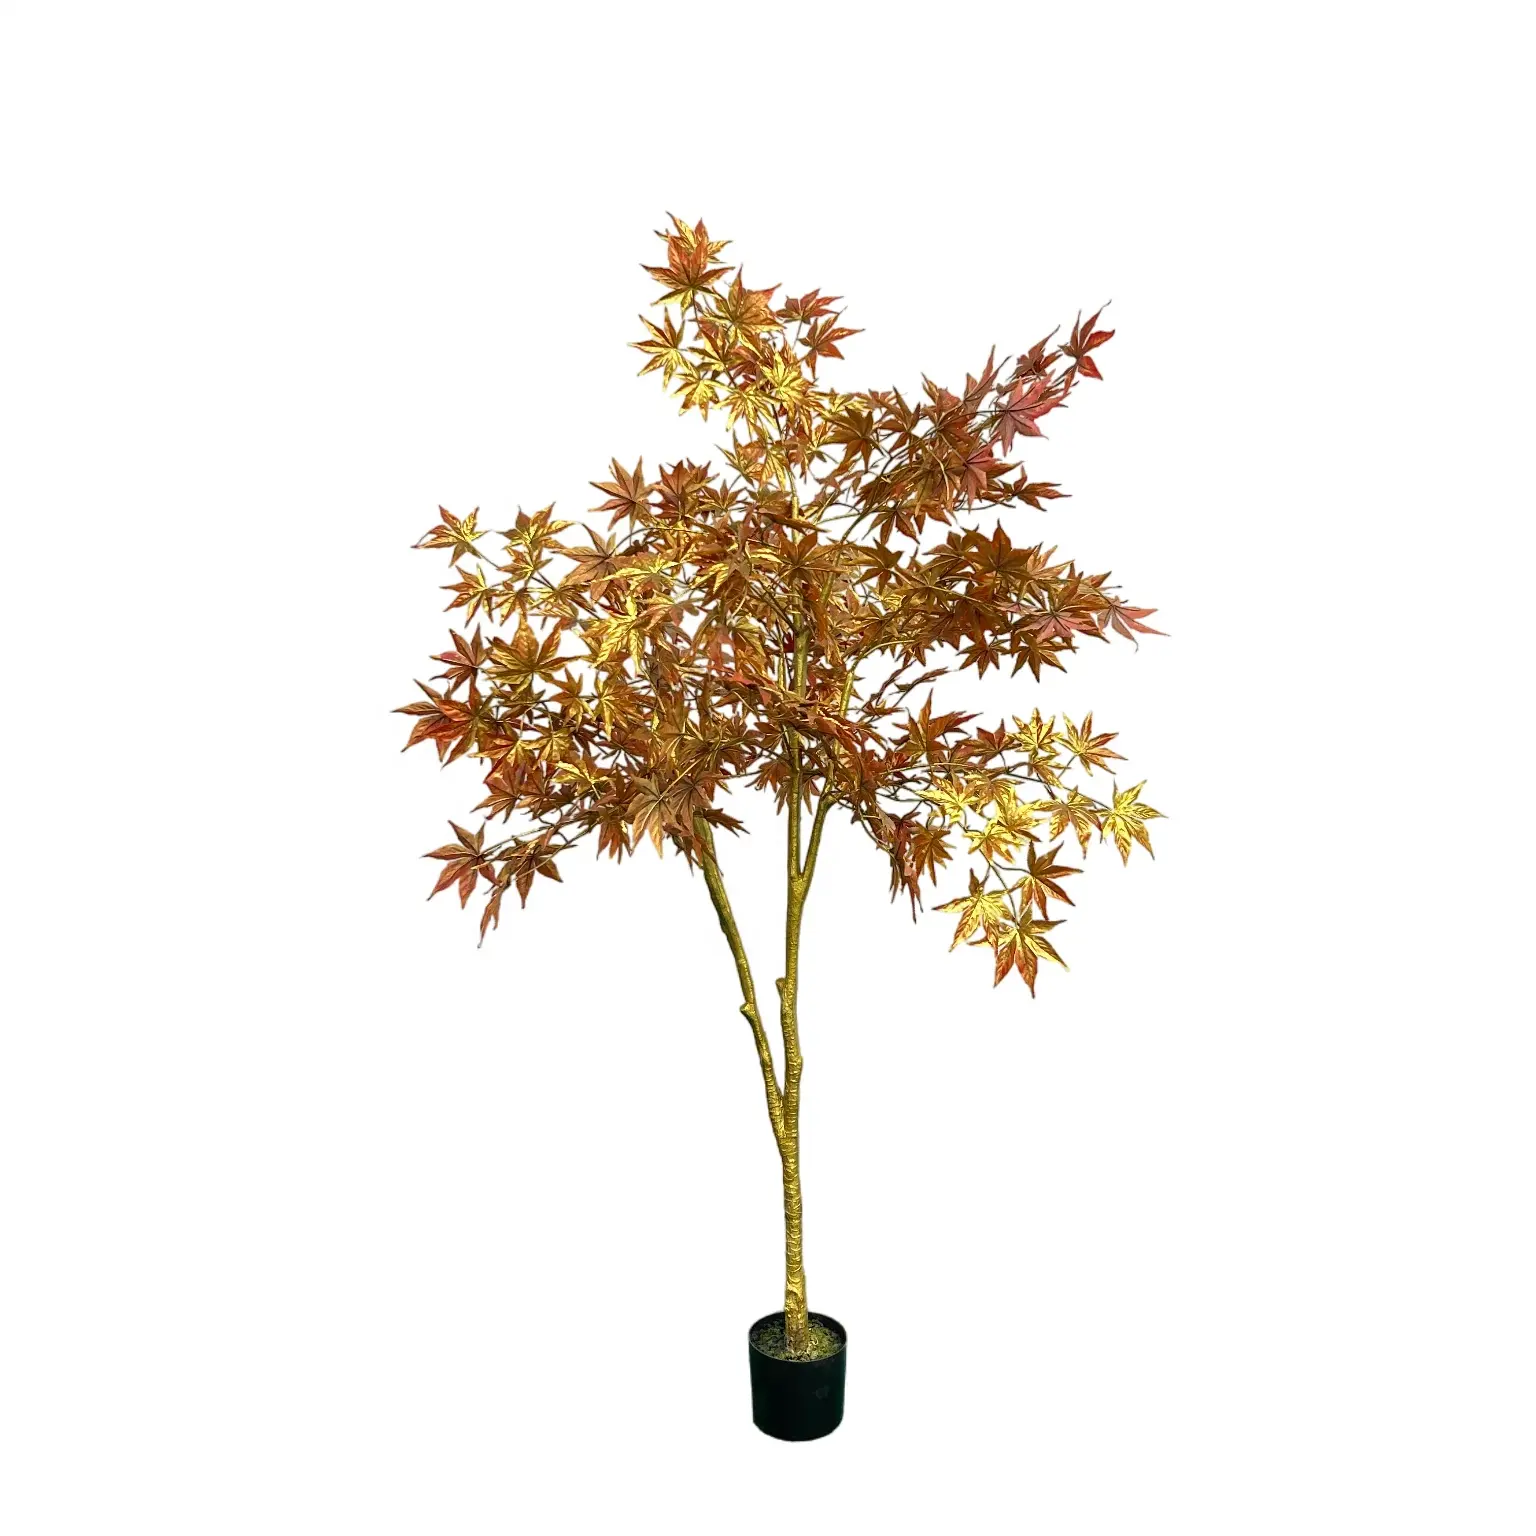 Großhandel Hot Sale Fast natürliche exquisite Handwerks kunst künstliche goldene rote Ahorn Baum für Innendekoration